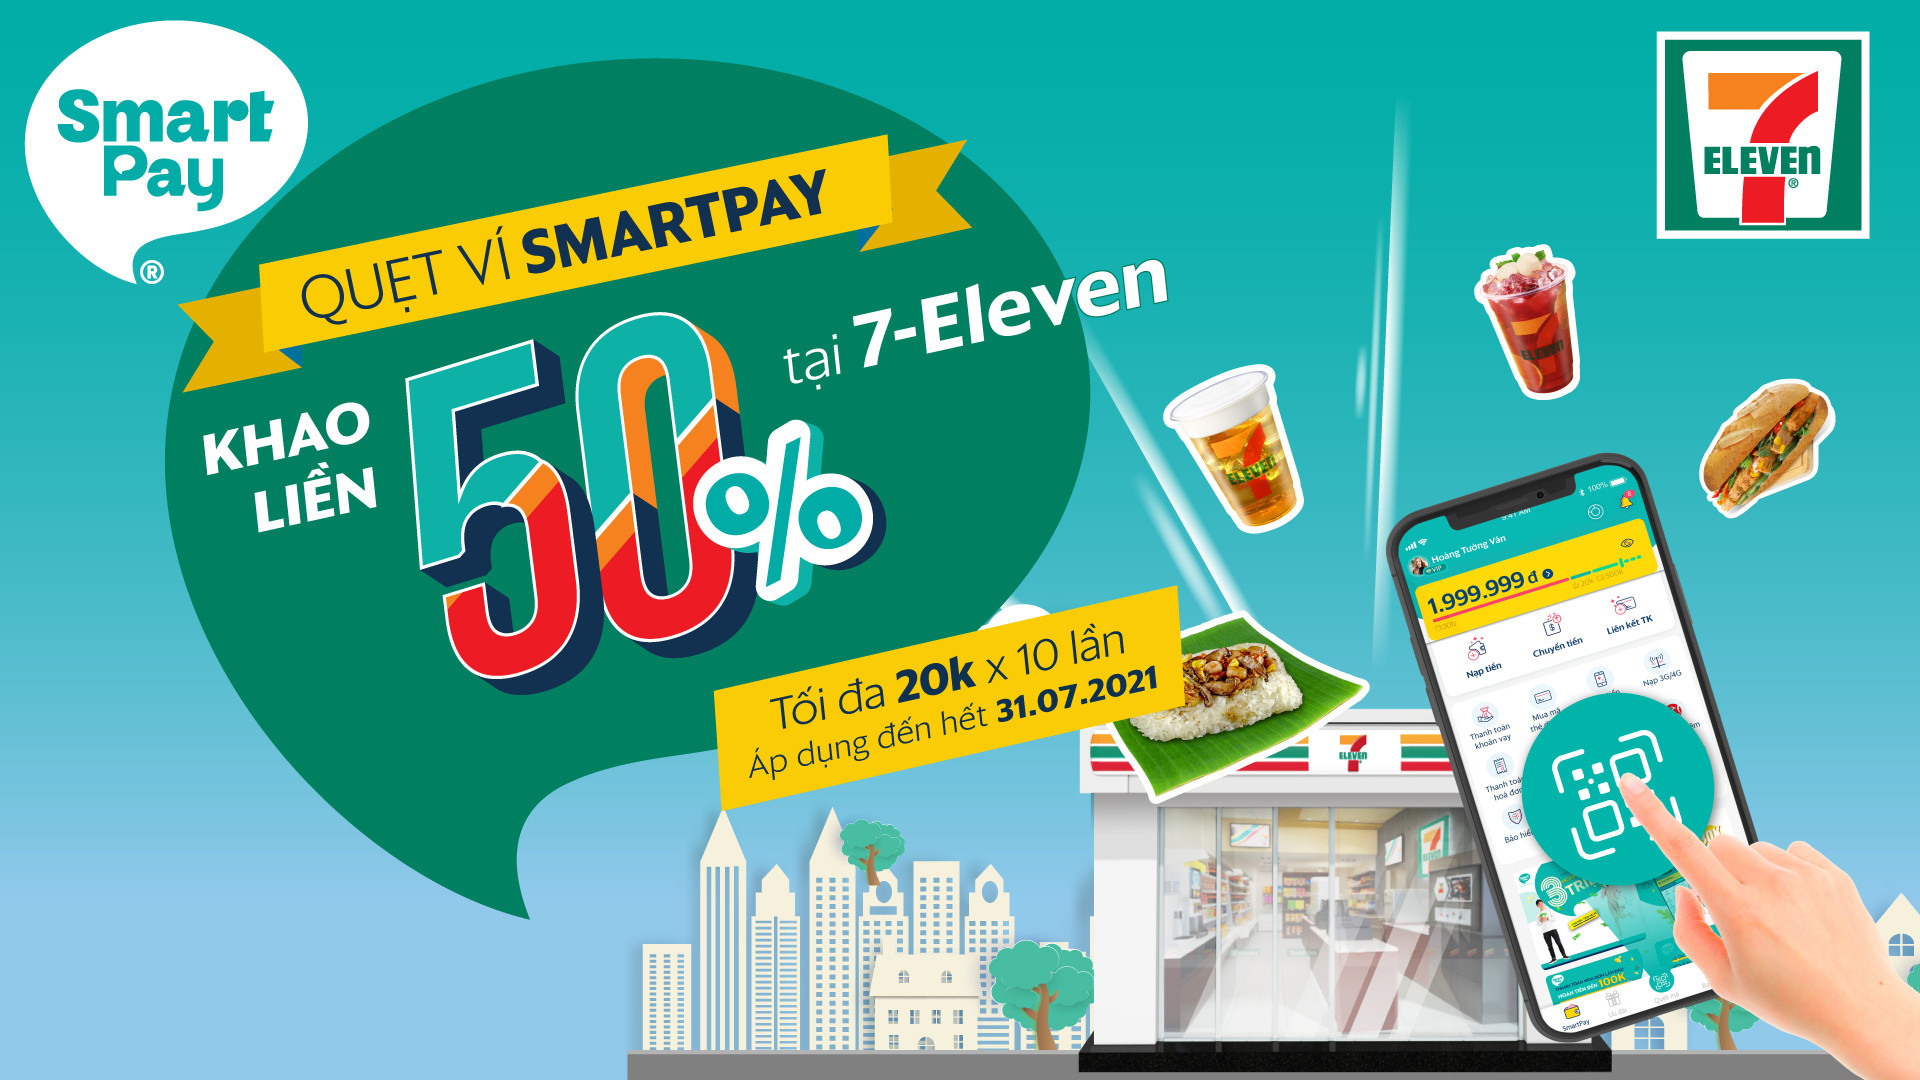 Quẹt ví SmartPay khao liền 50% tại 7-Eleven